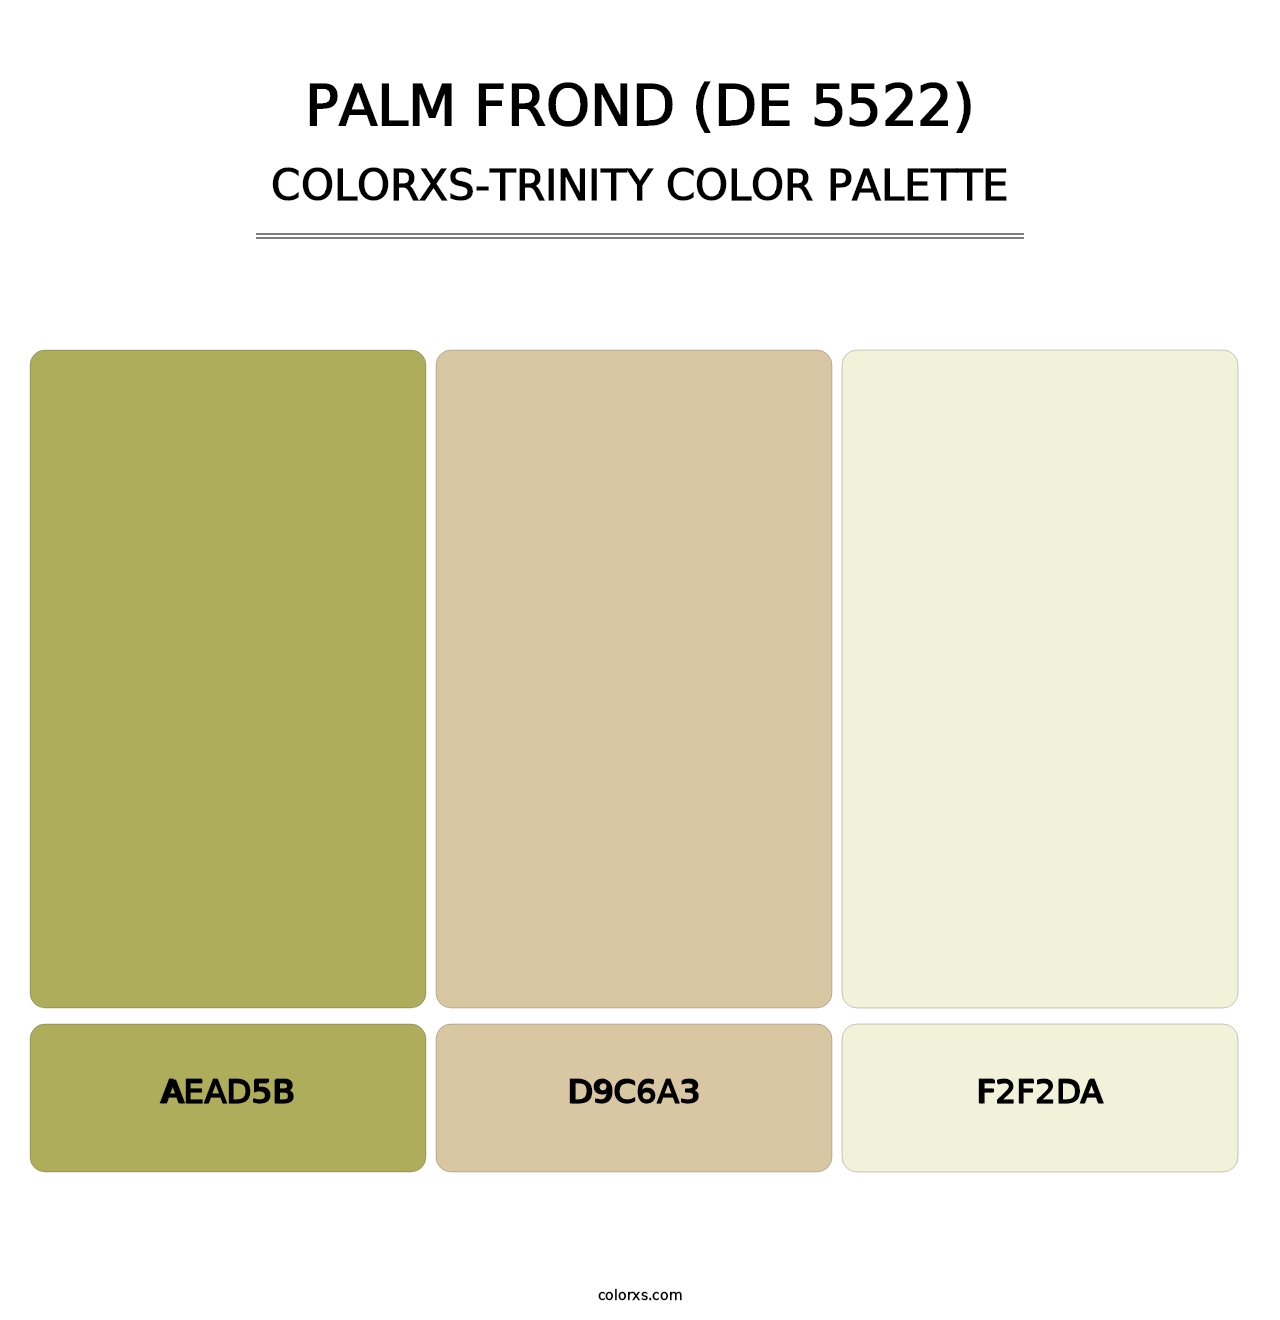 Palm Frond (DE 5522) - Colorxs Trinity Palette